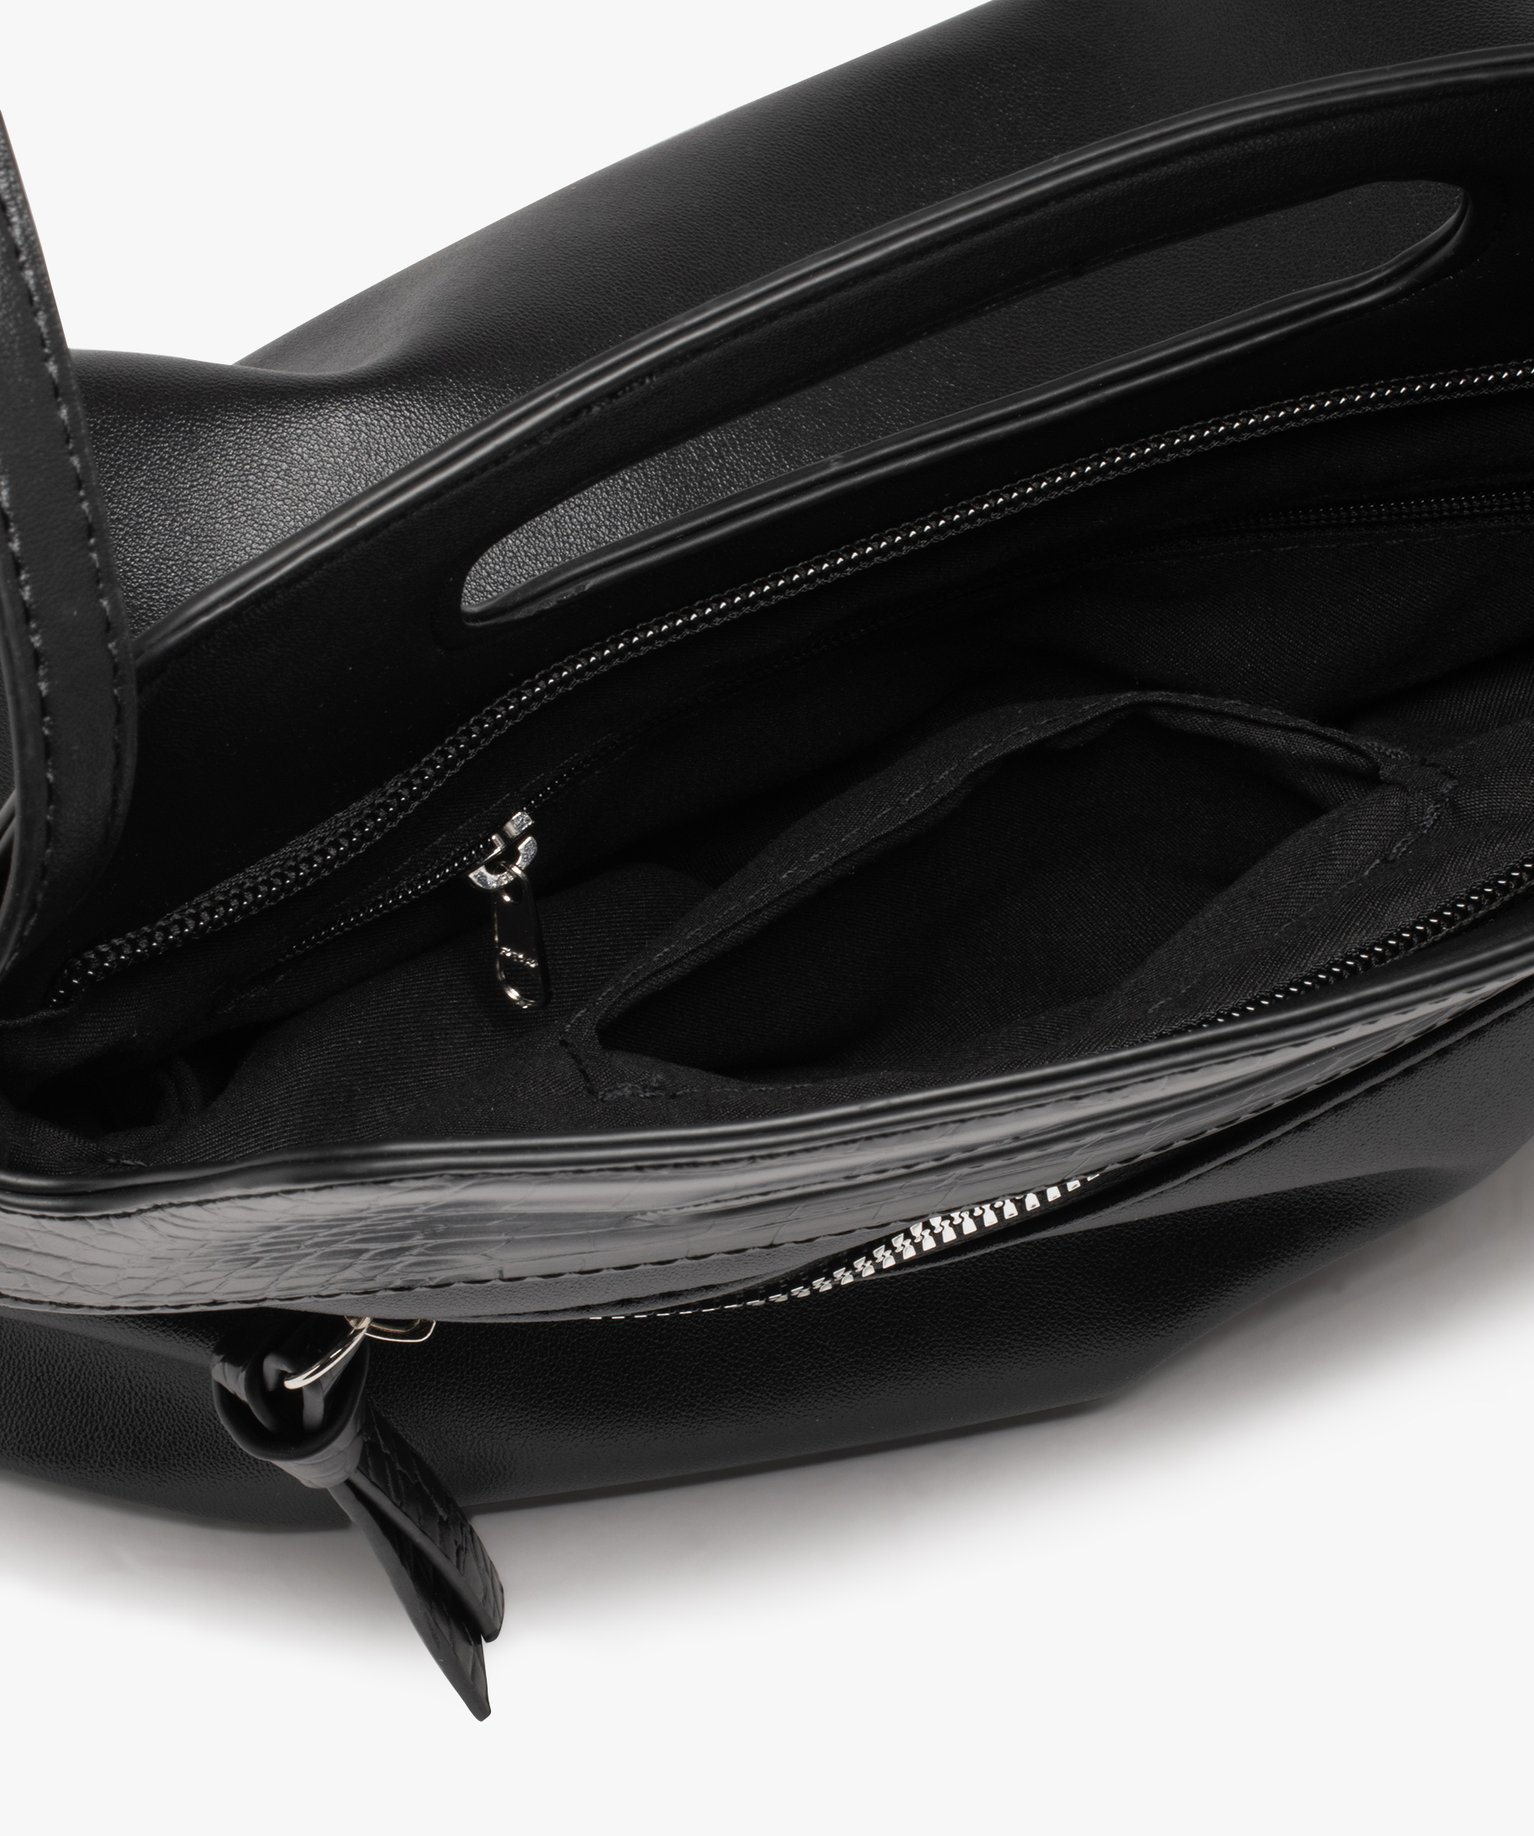 Grand sac à bandoulière noir avec fermeture éclair - Sacs à main - Noir